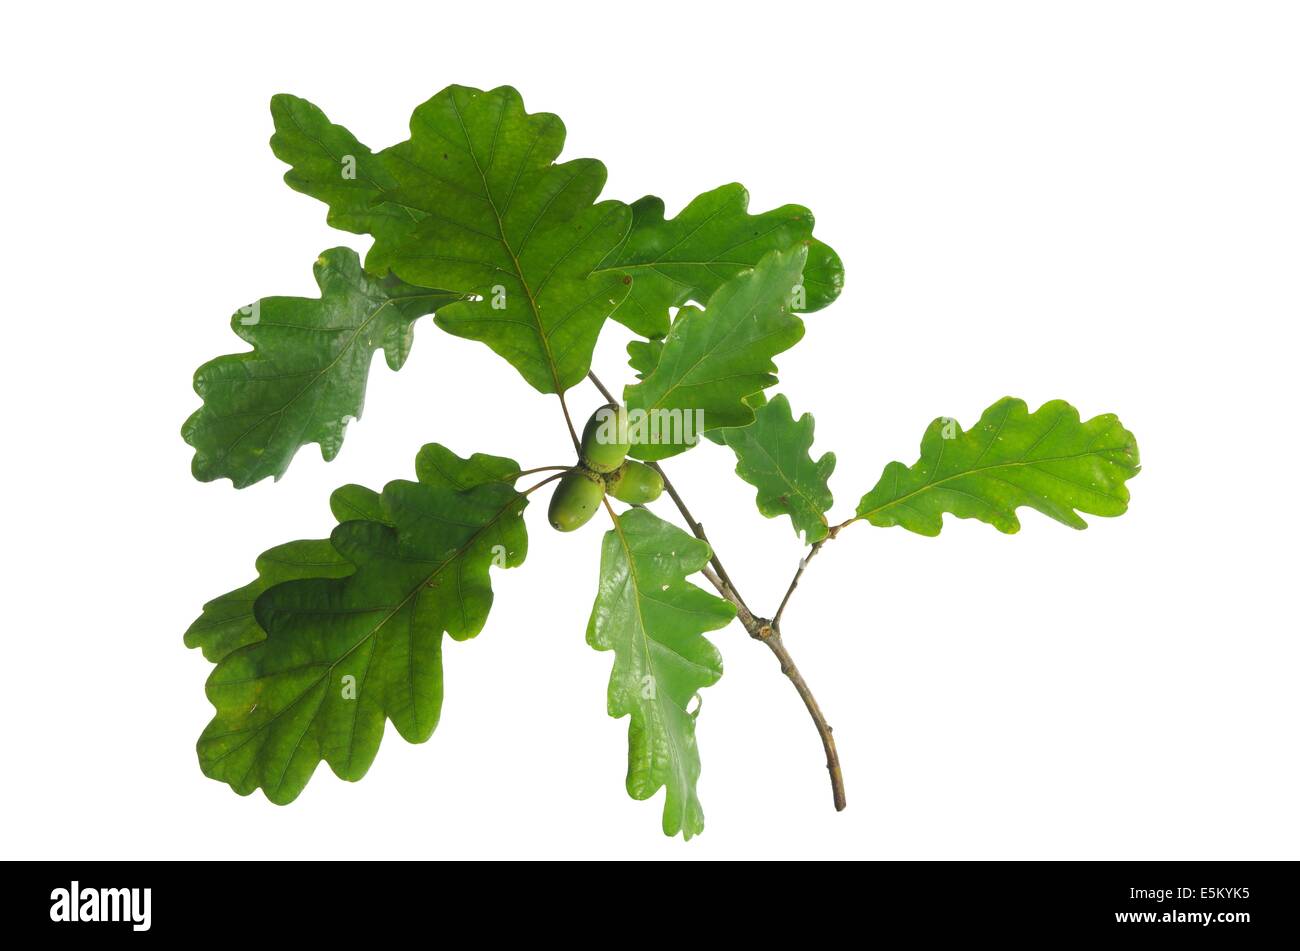 oak leaf and acorn on white background Stock Photo